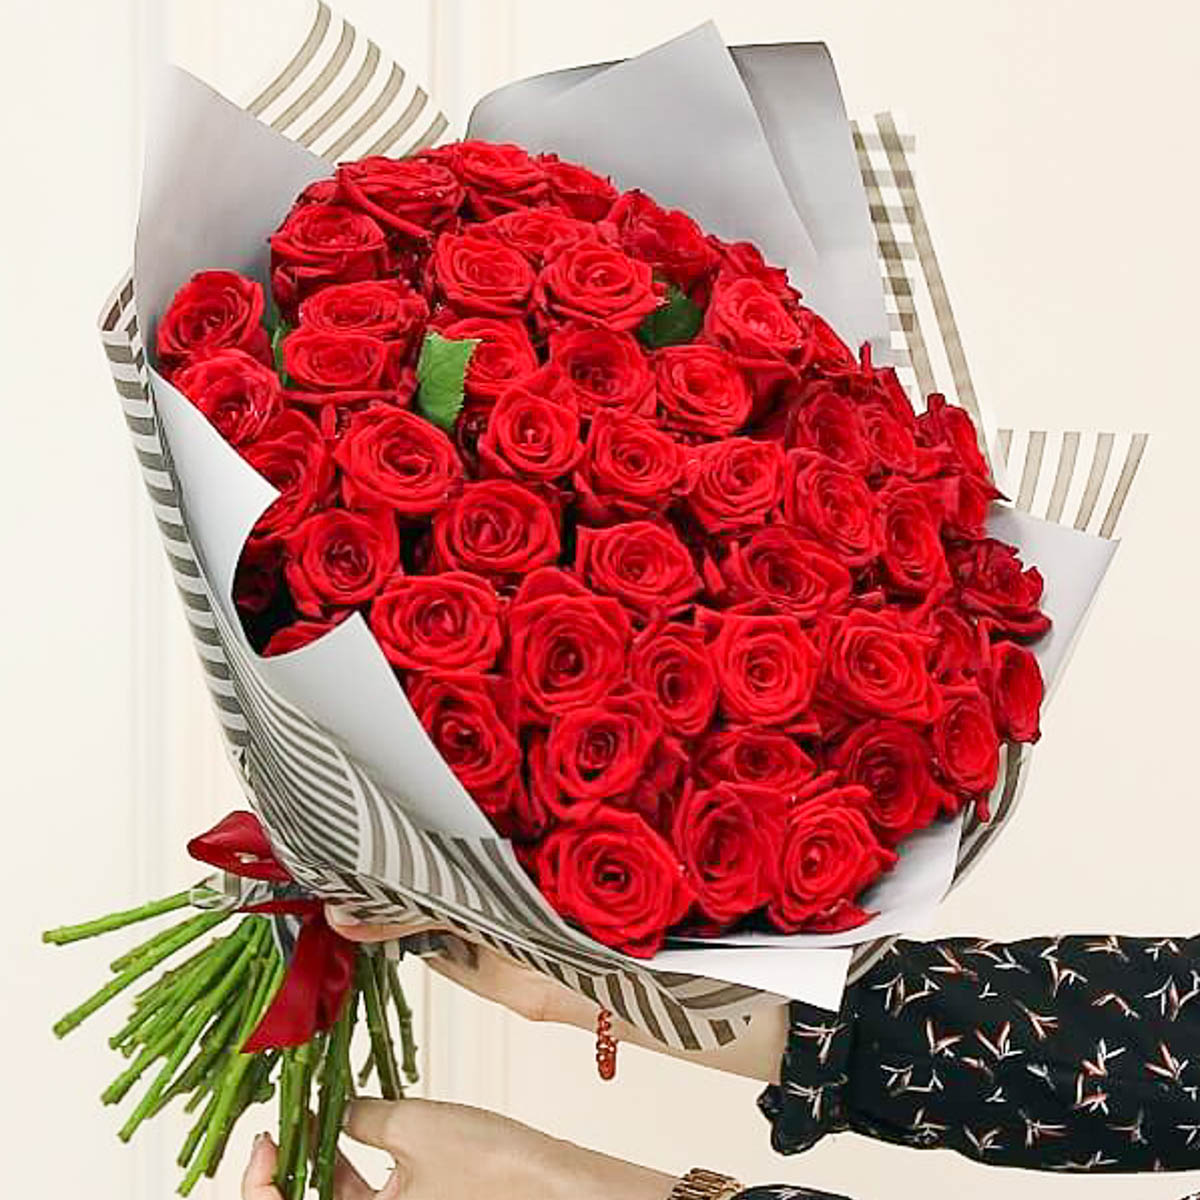 Фото 2 - Моно-букет из 51 красной розы